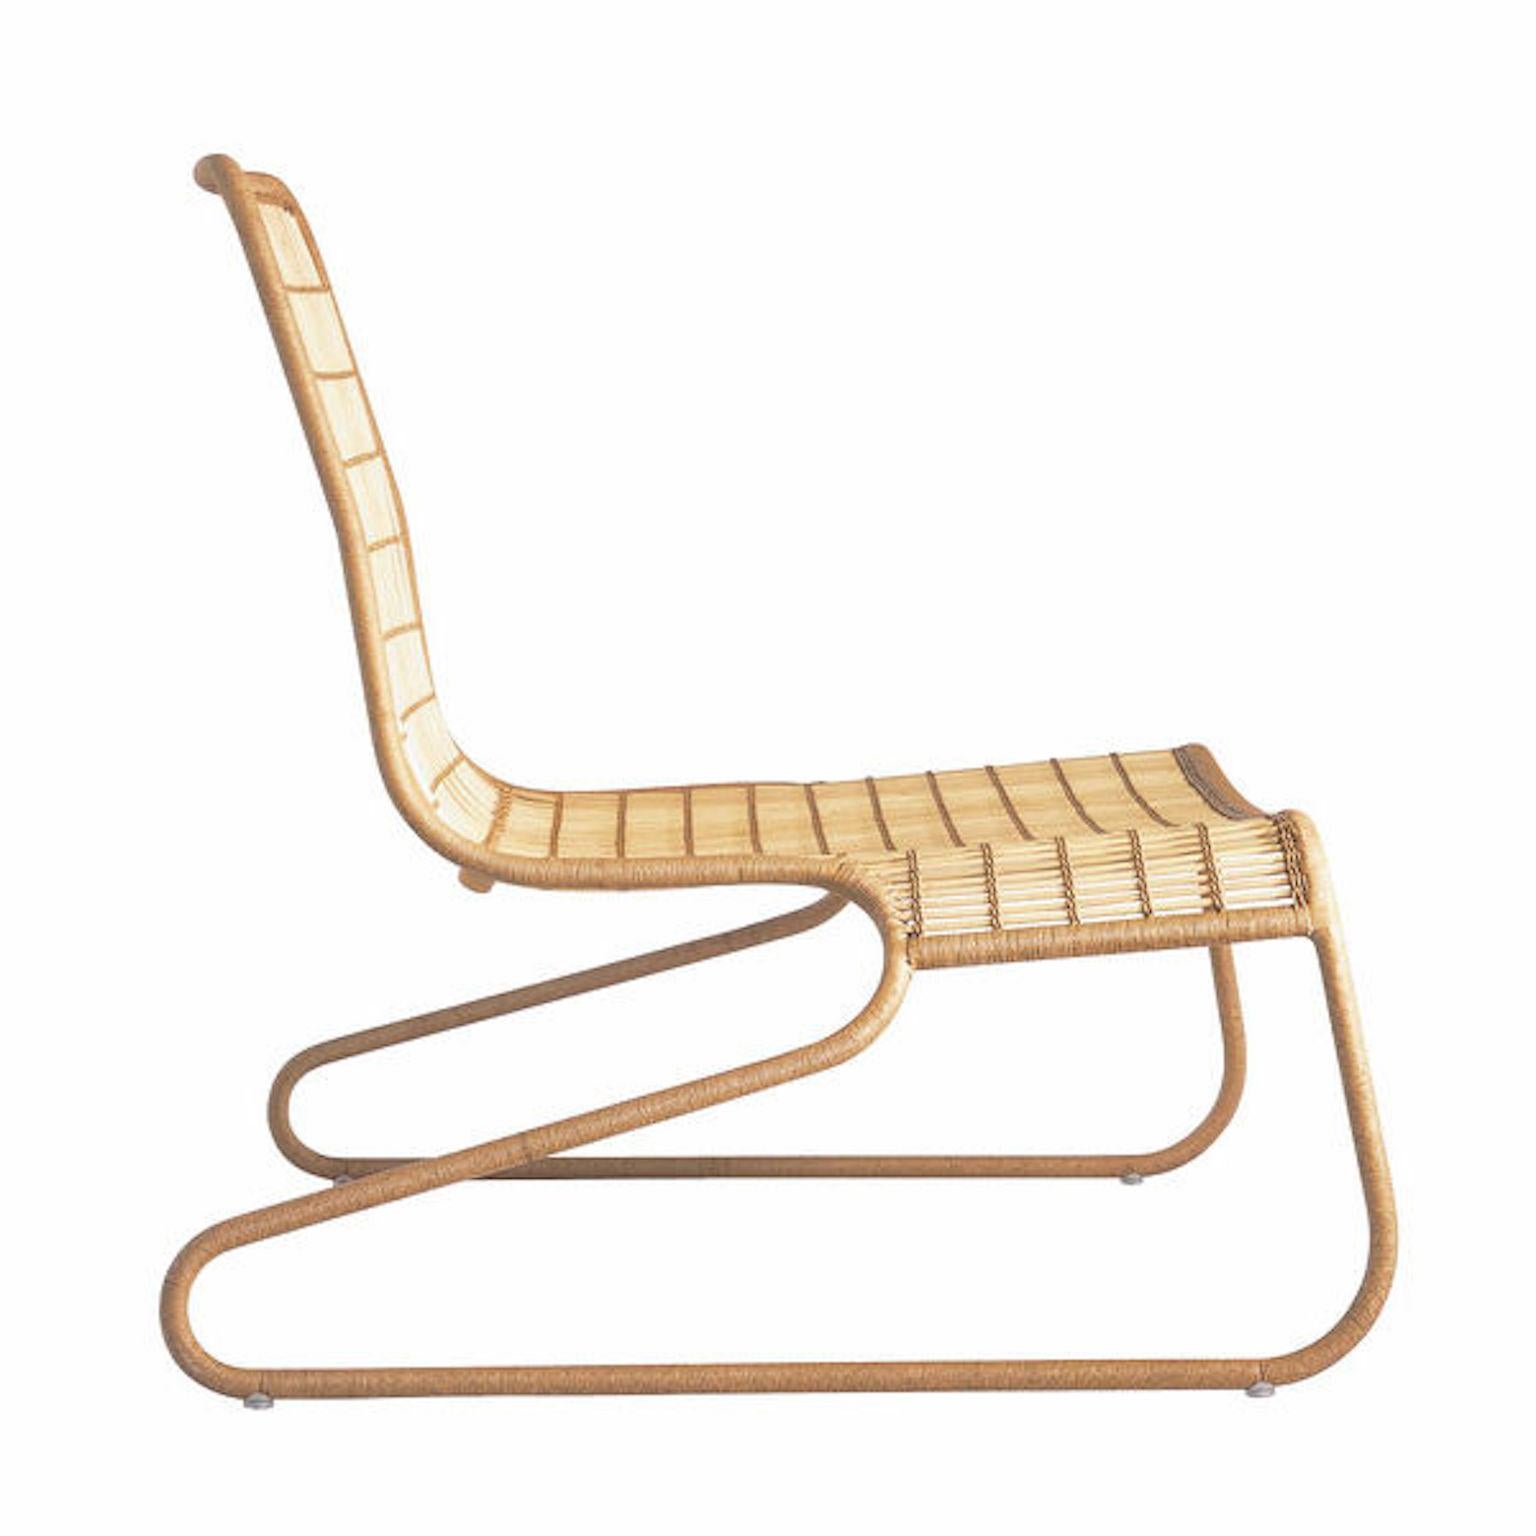 Fauteuil Flo conçu par Patricia Urquiola pour Driade avec une structure en acier peint recouverte d'osier dans une version 'aérienne'.
Un fauteuil qui rappelle les formes classiques des Eames mais qui se distingue par les matériaux utilisés. Idéal